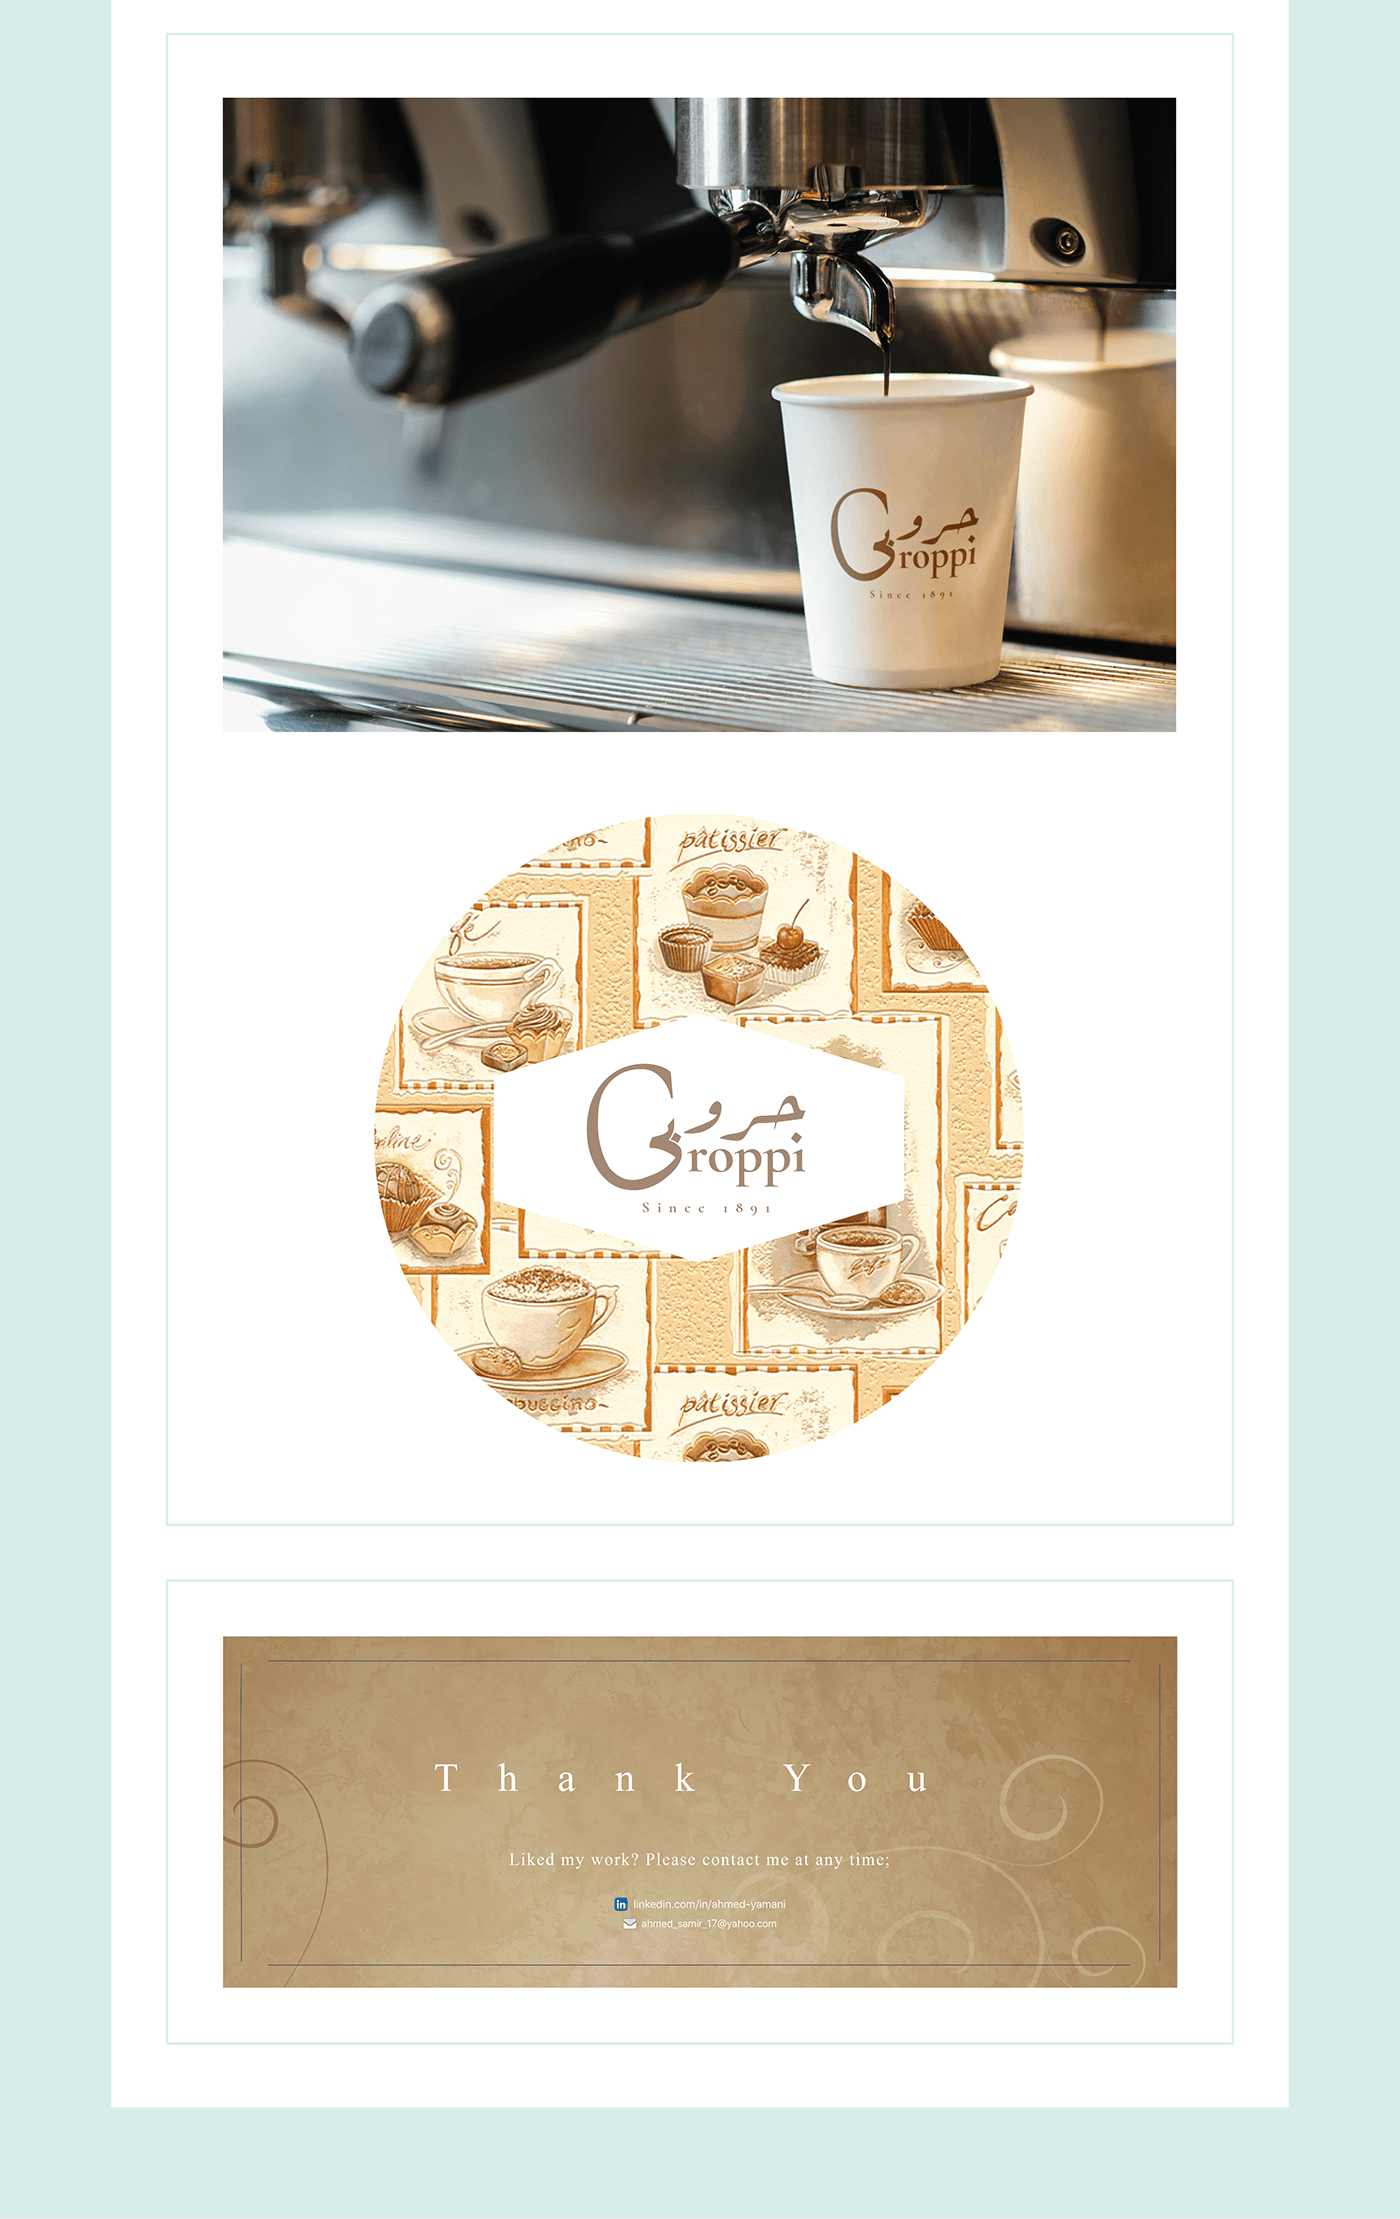 branding  groppi groppi caffe logo logo cafe logo caffe Logo Design Logo redesign redesign cafe